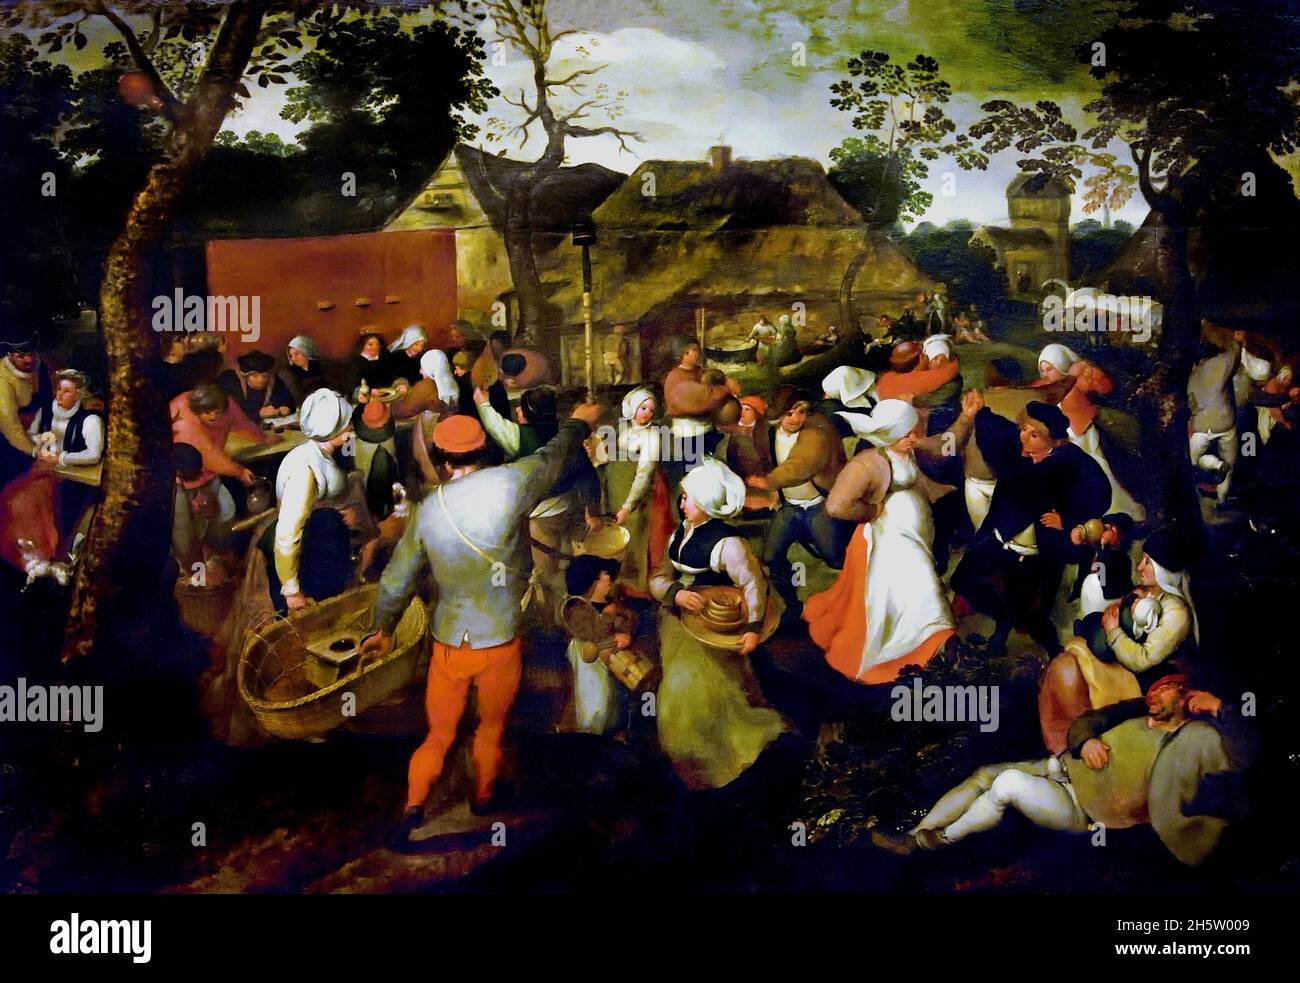 Mariage paysan 1570 Pieter Brueghel le jeune 1564 - 1638 Anvers Belgique flamande Banque D'Images